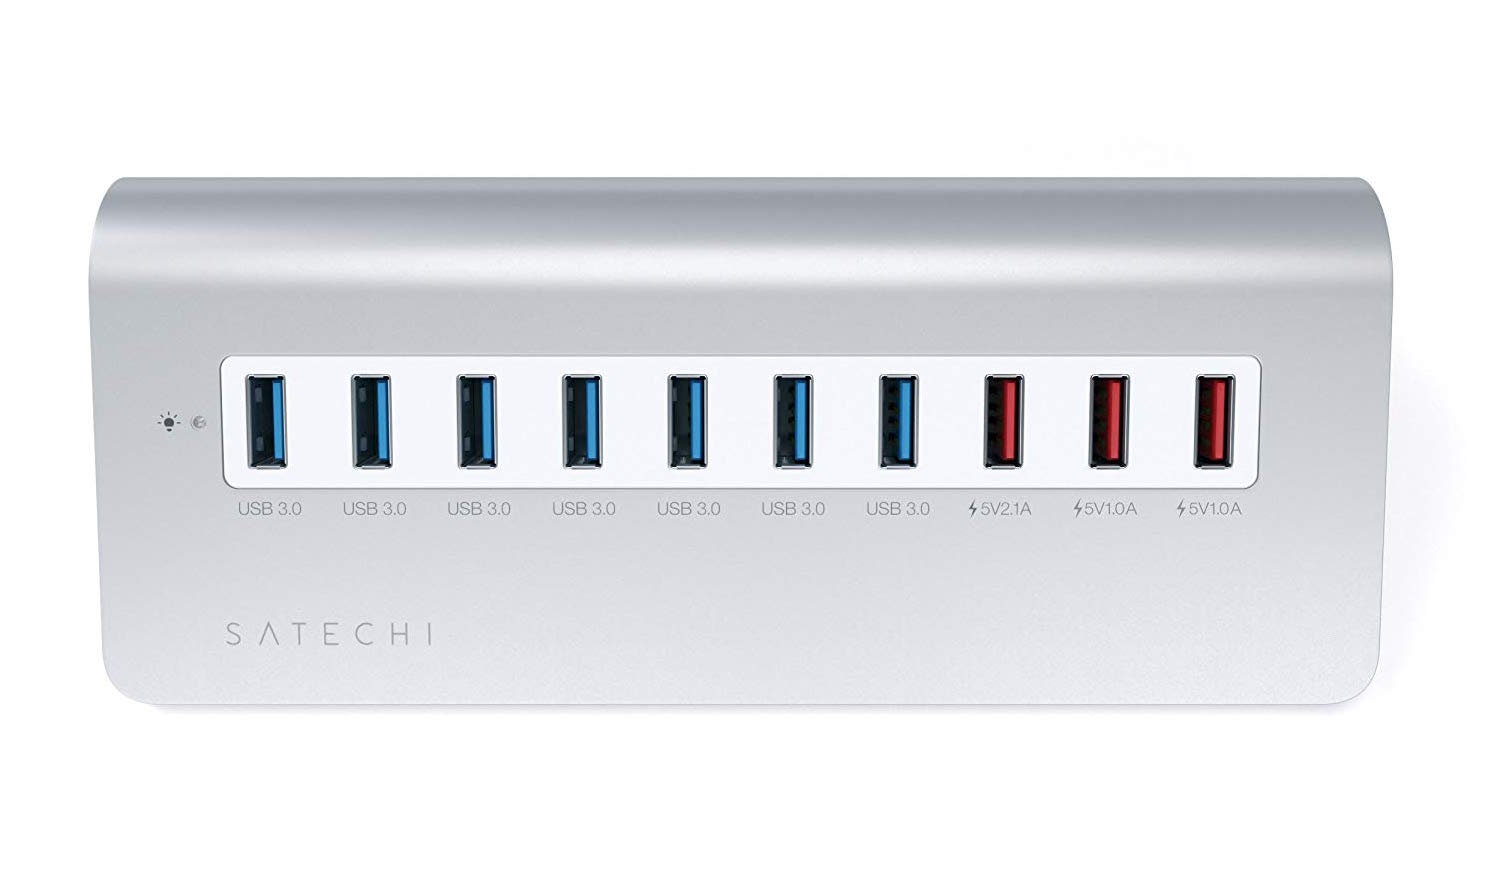 Универсальный USB-хаб (концентратор) Satechi Aluminum 10-Port USB 3.0 Hub W/3 Charging Ports для MacBook, iMac и других компьютеров